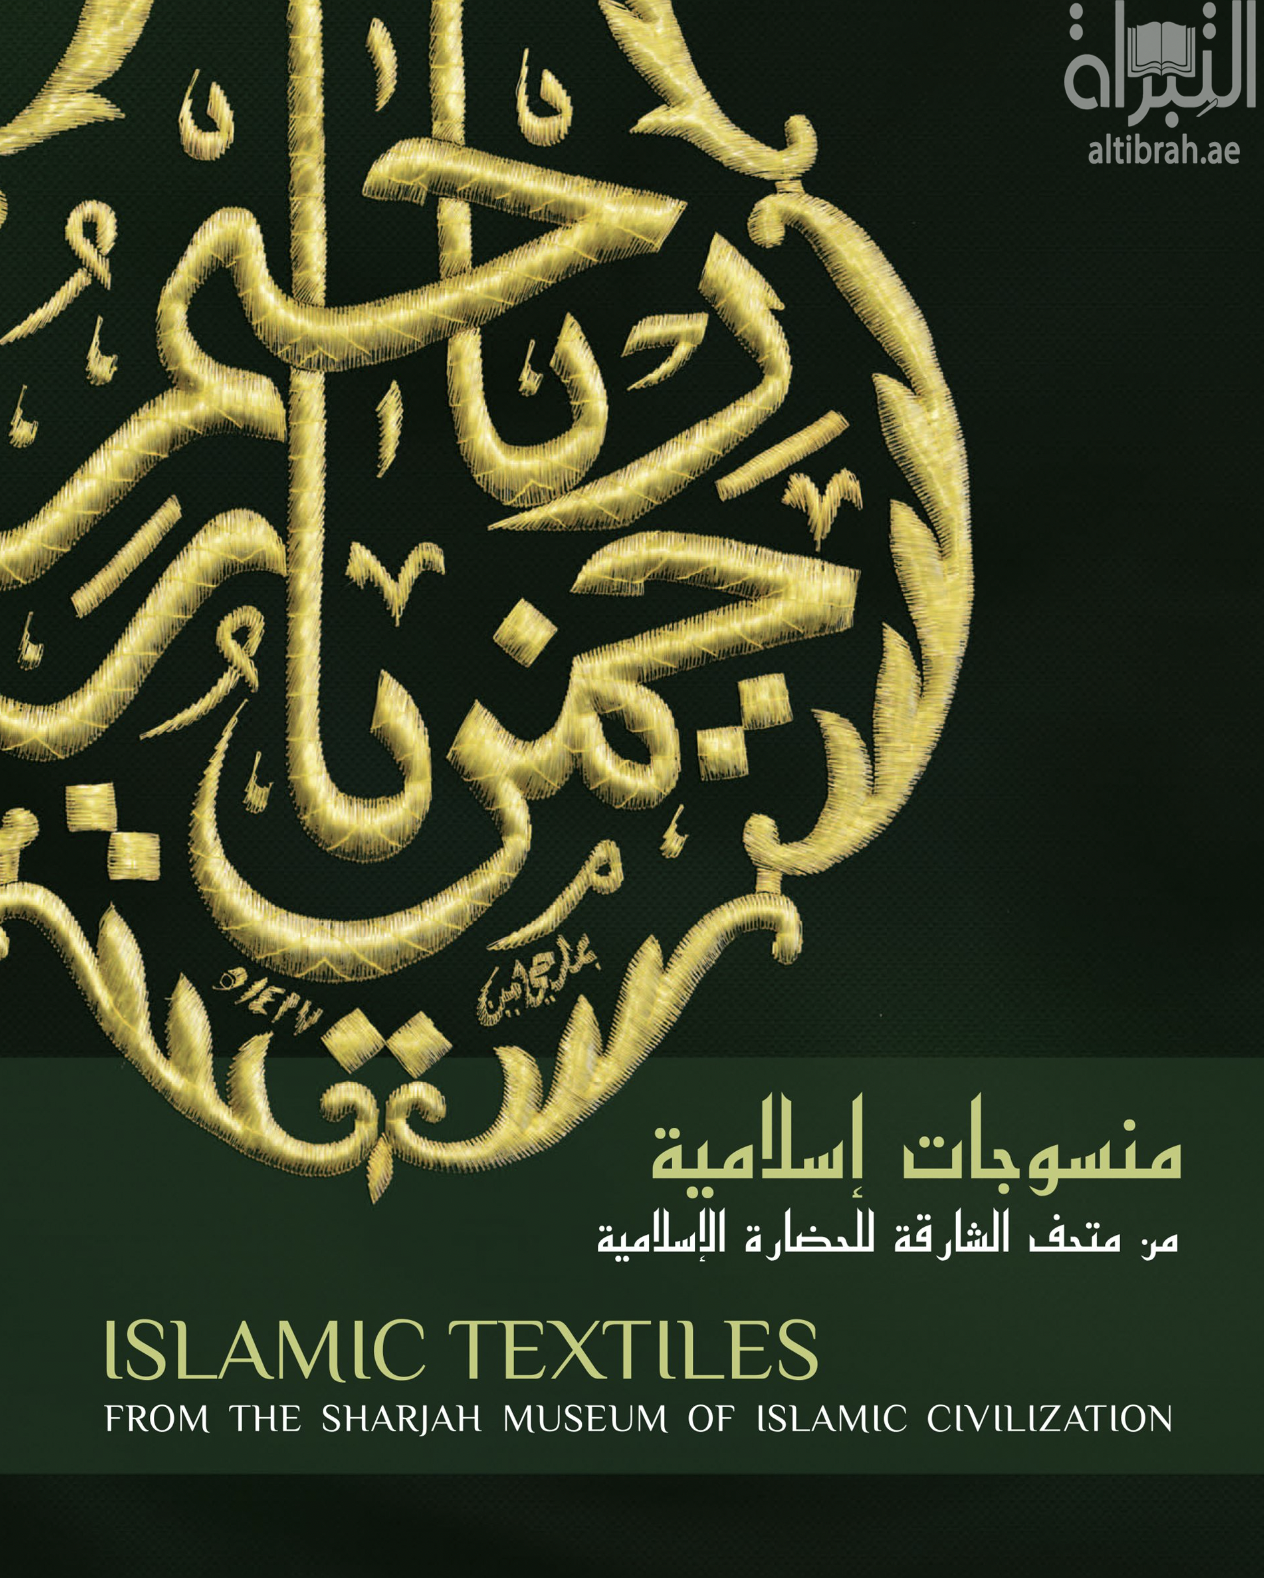 غلاف كتاب منسوجات إسلامية من متحف الشارقة للحضارة الإسلامية Islamic Textiles from the Sharjah Museum of Islamic Civilzation